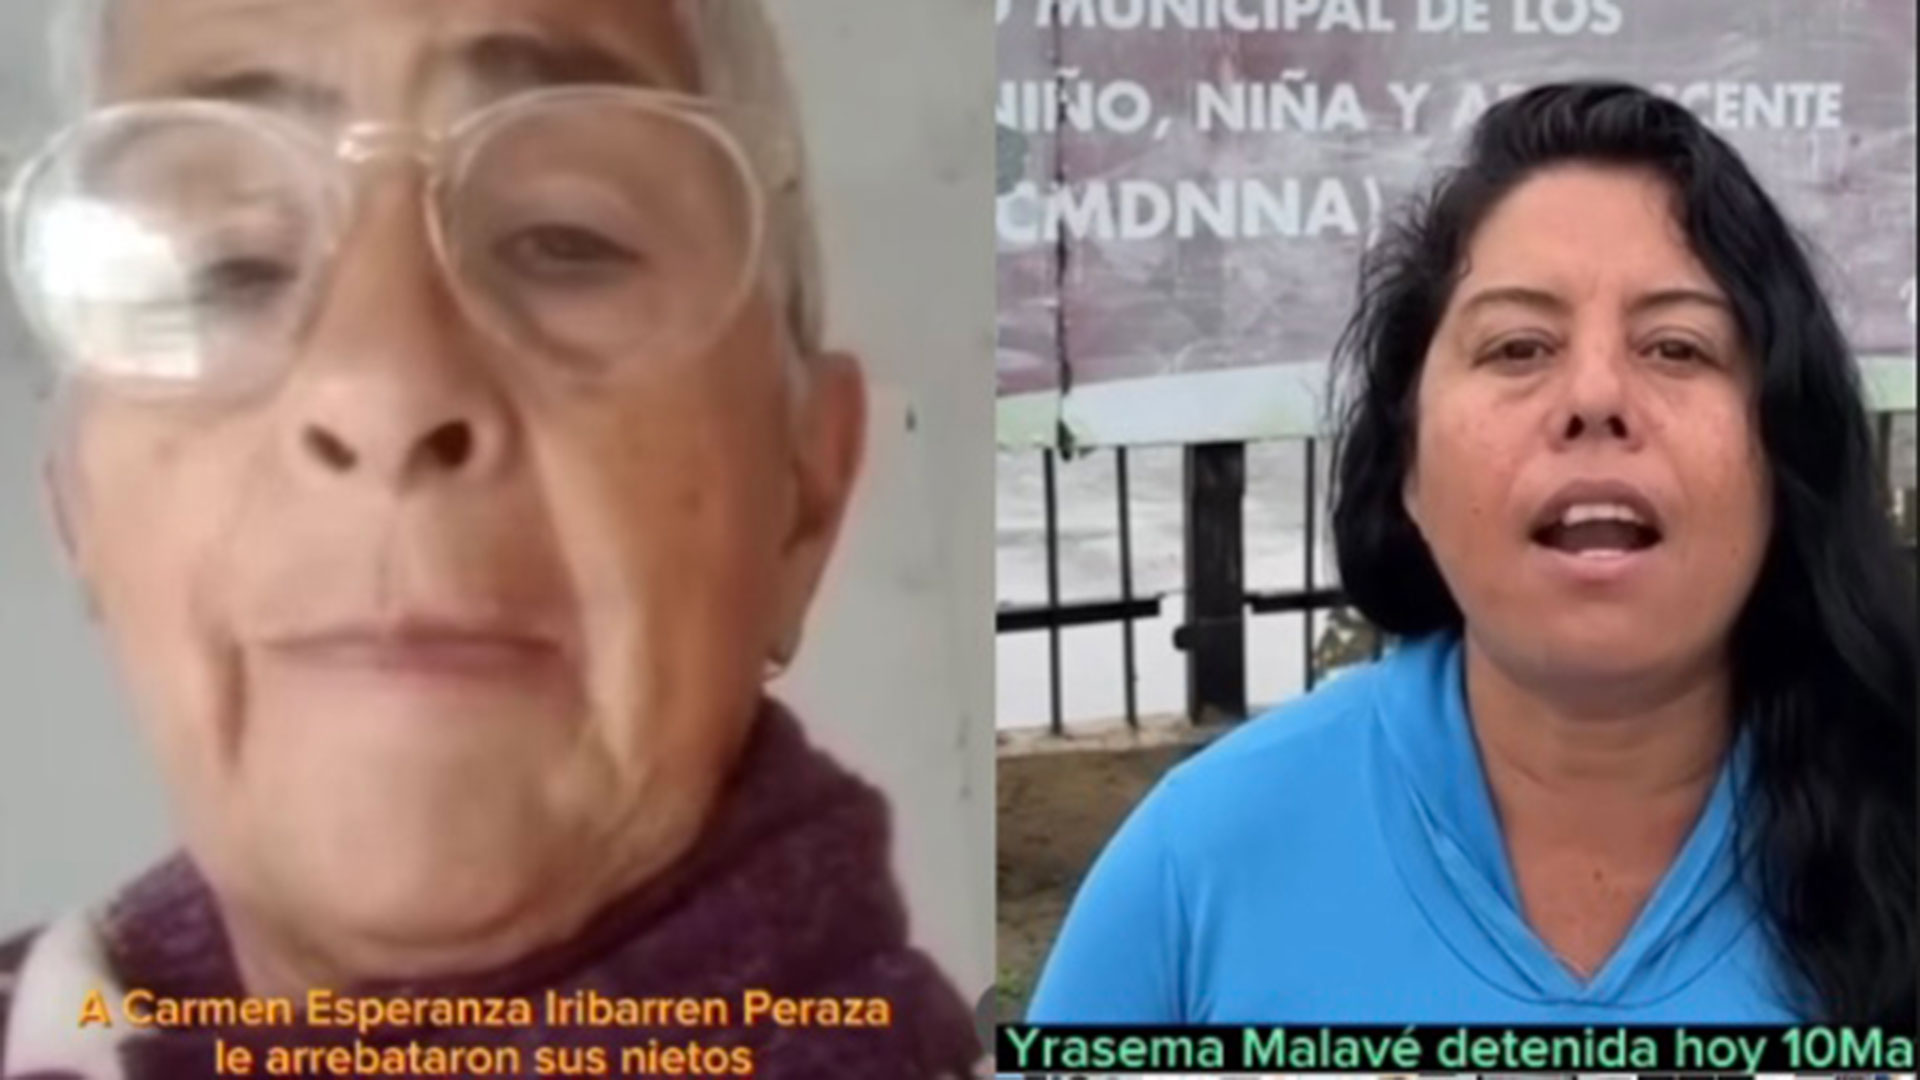 Carmen Iribarren e Yrasema Malavé serían víctimas de la red que arrebata los niños